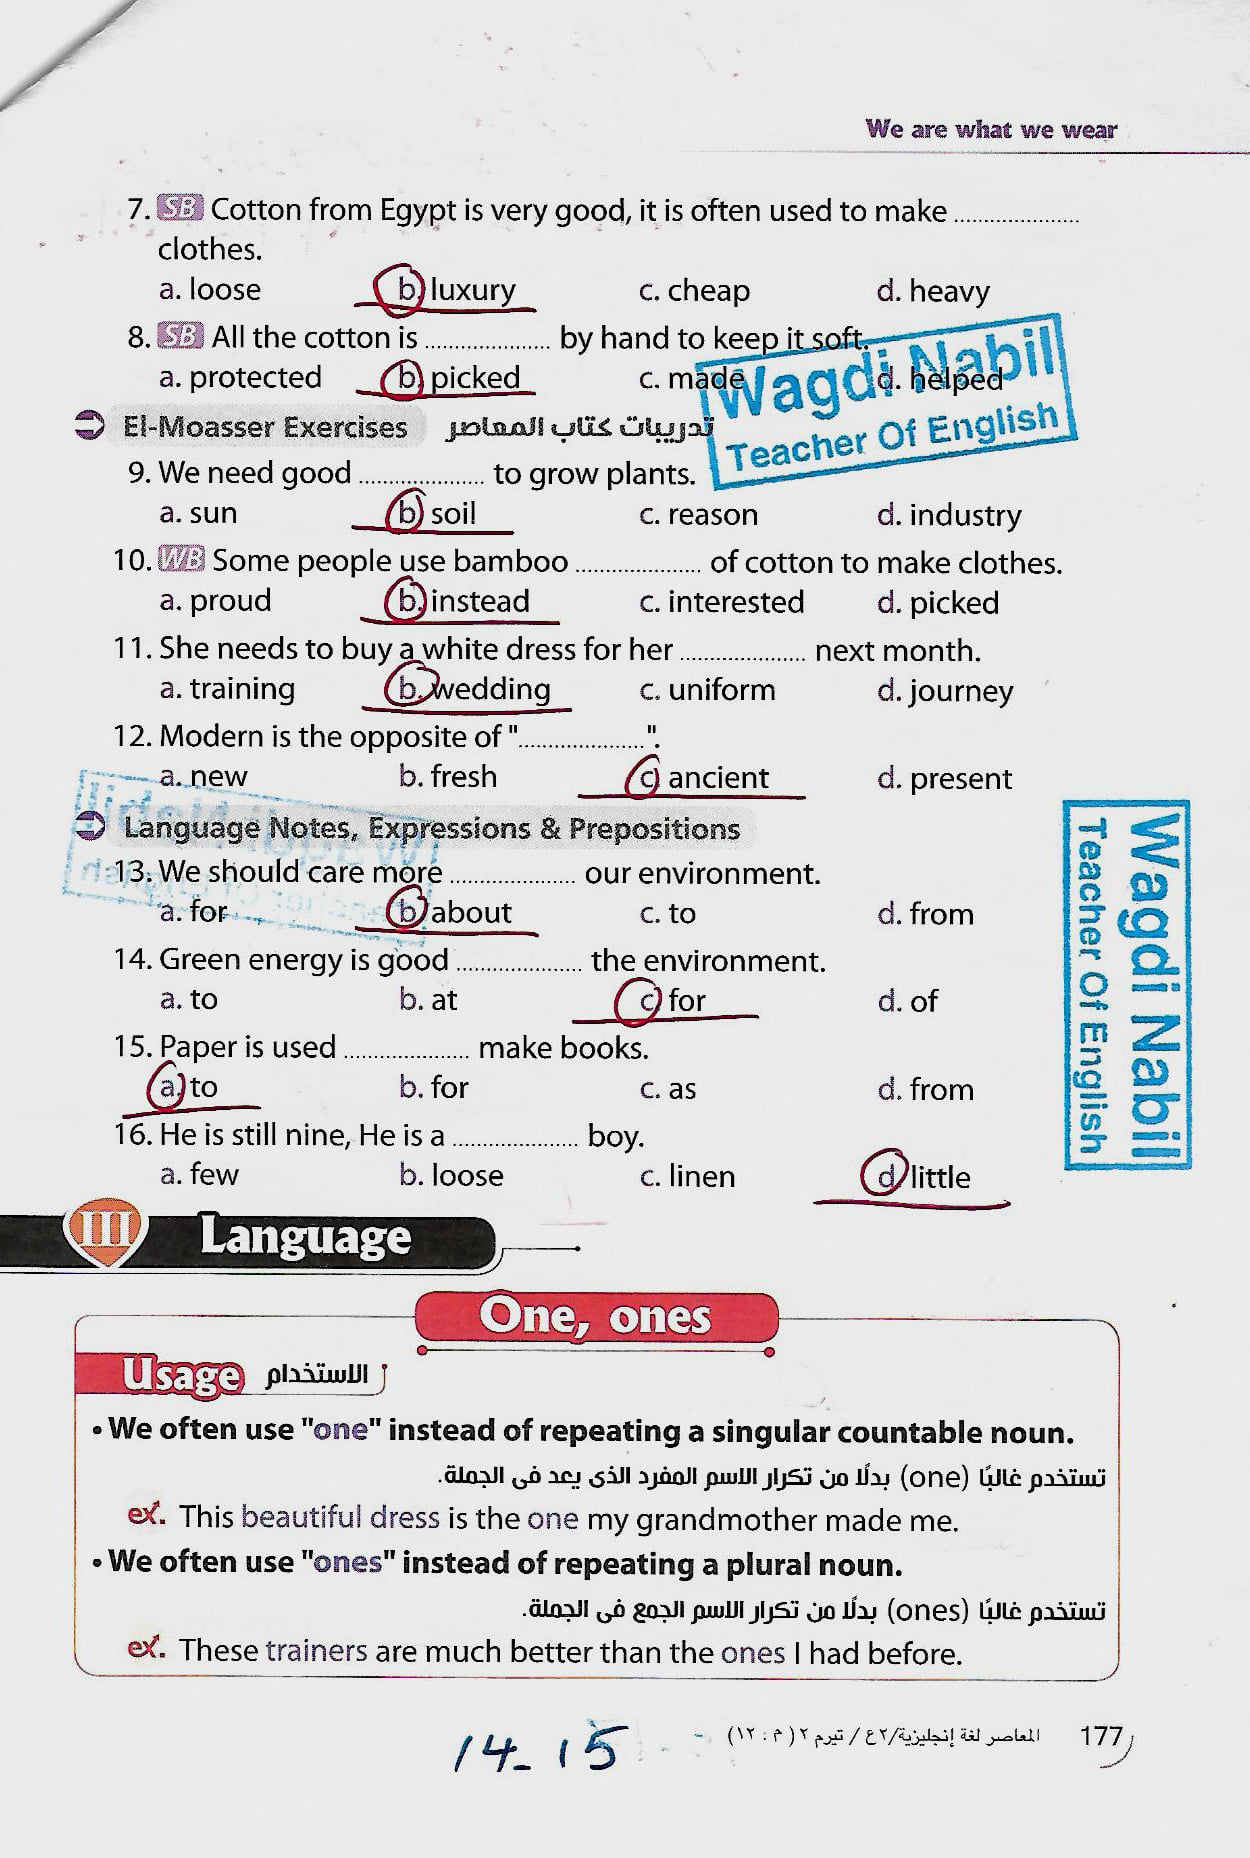 مراجعة اللغة الانجليزية للصف الثاني الاعدادي الترم الثاني mr _ Wagdi Nabil 4